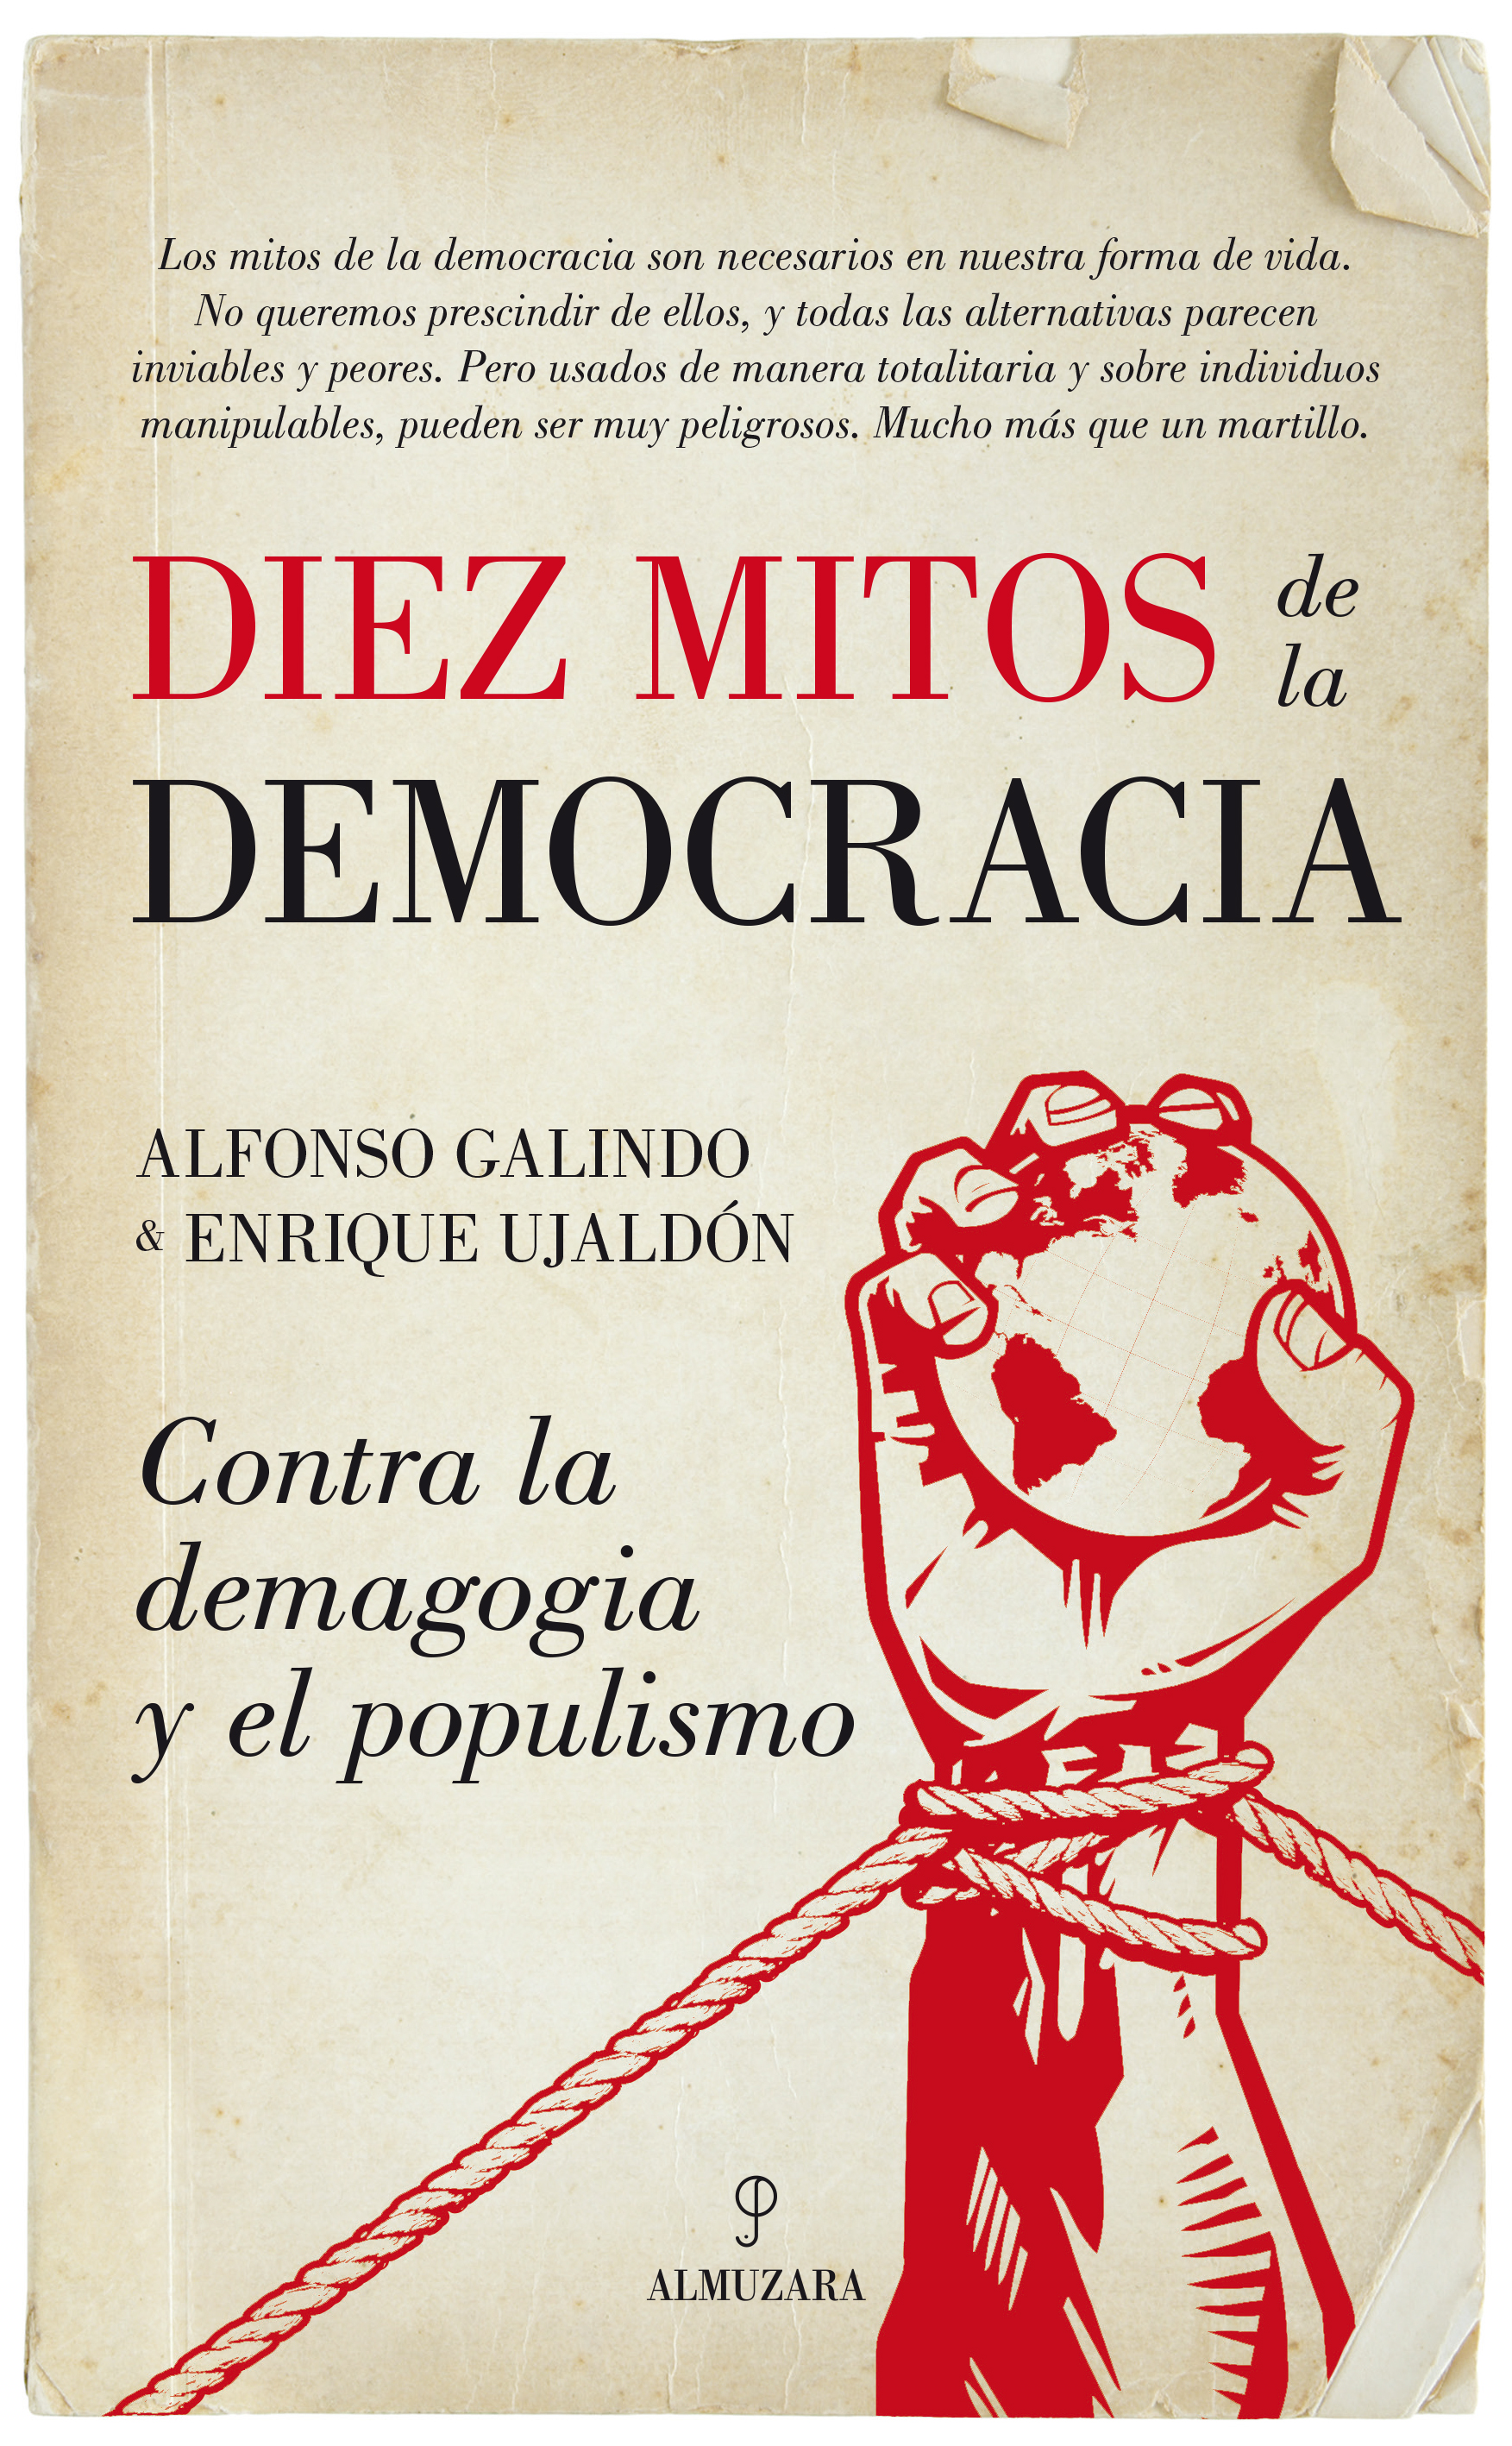 Diez mitos de la democracia - Editorial Almuzara